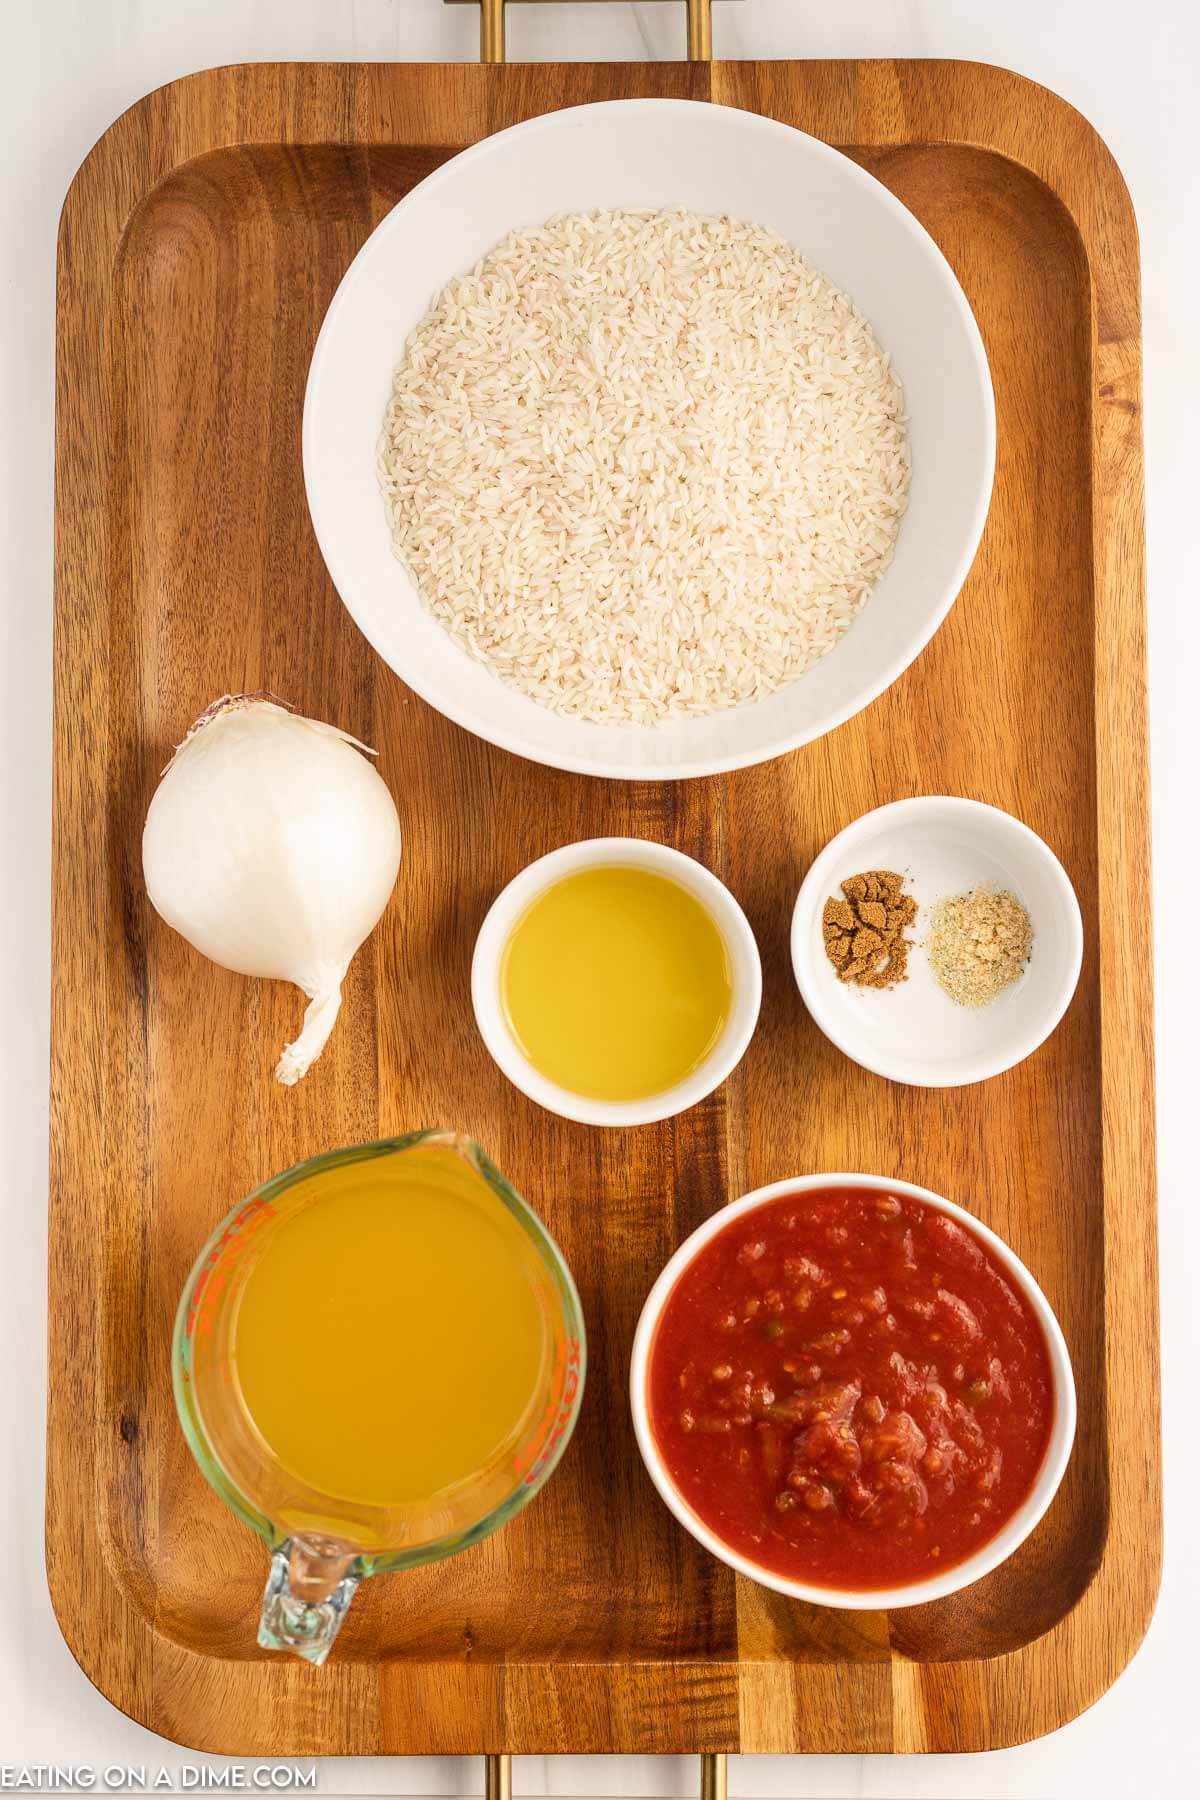 Ingredients needed - olive oil, onion, rice, chicken broth, salsa, garlic salt, cumin